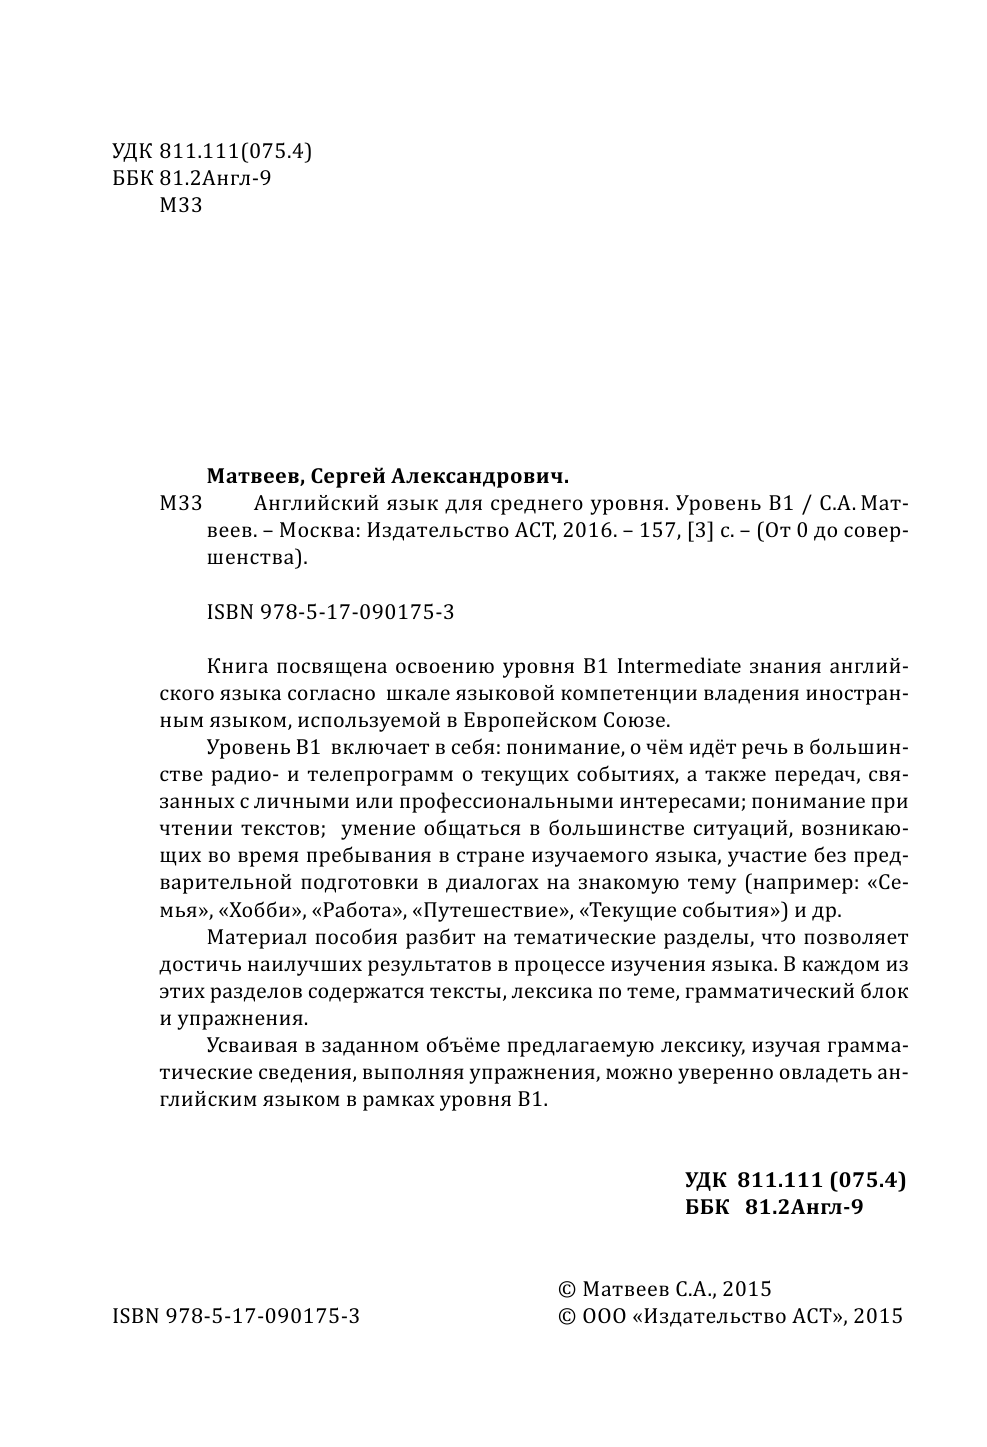 Матвеев Сергей Александрович Английский язык для среднего уровня. Уровень В1 - страница 3